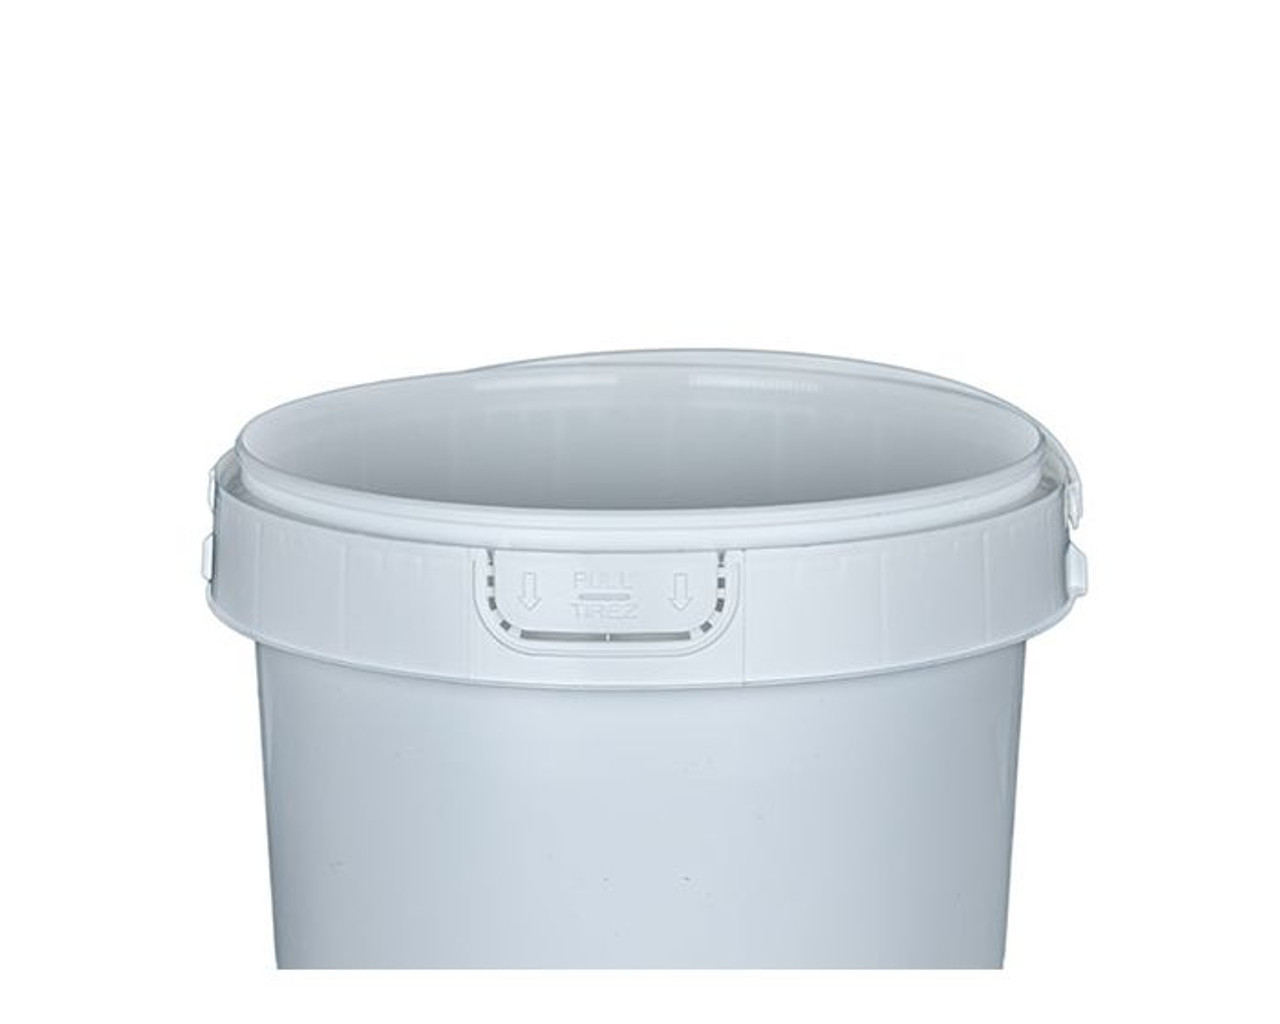 60383-001-08 1 Gallon Round Plastic Container - Handle - IPL